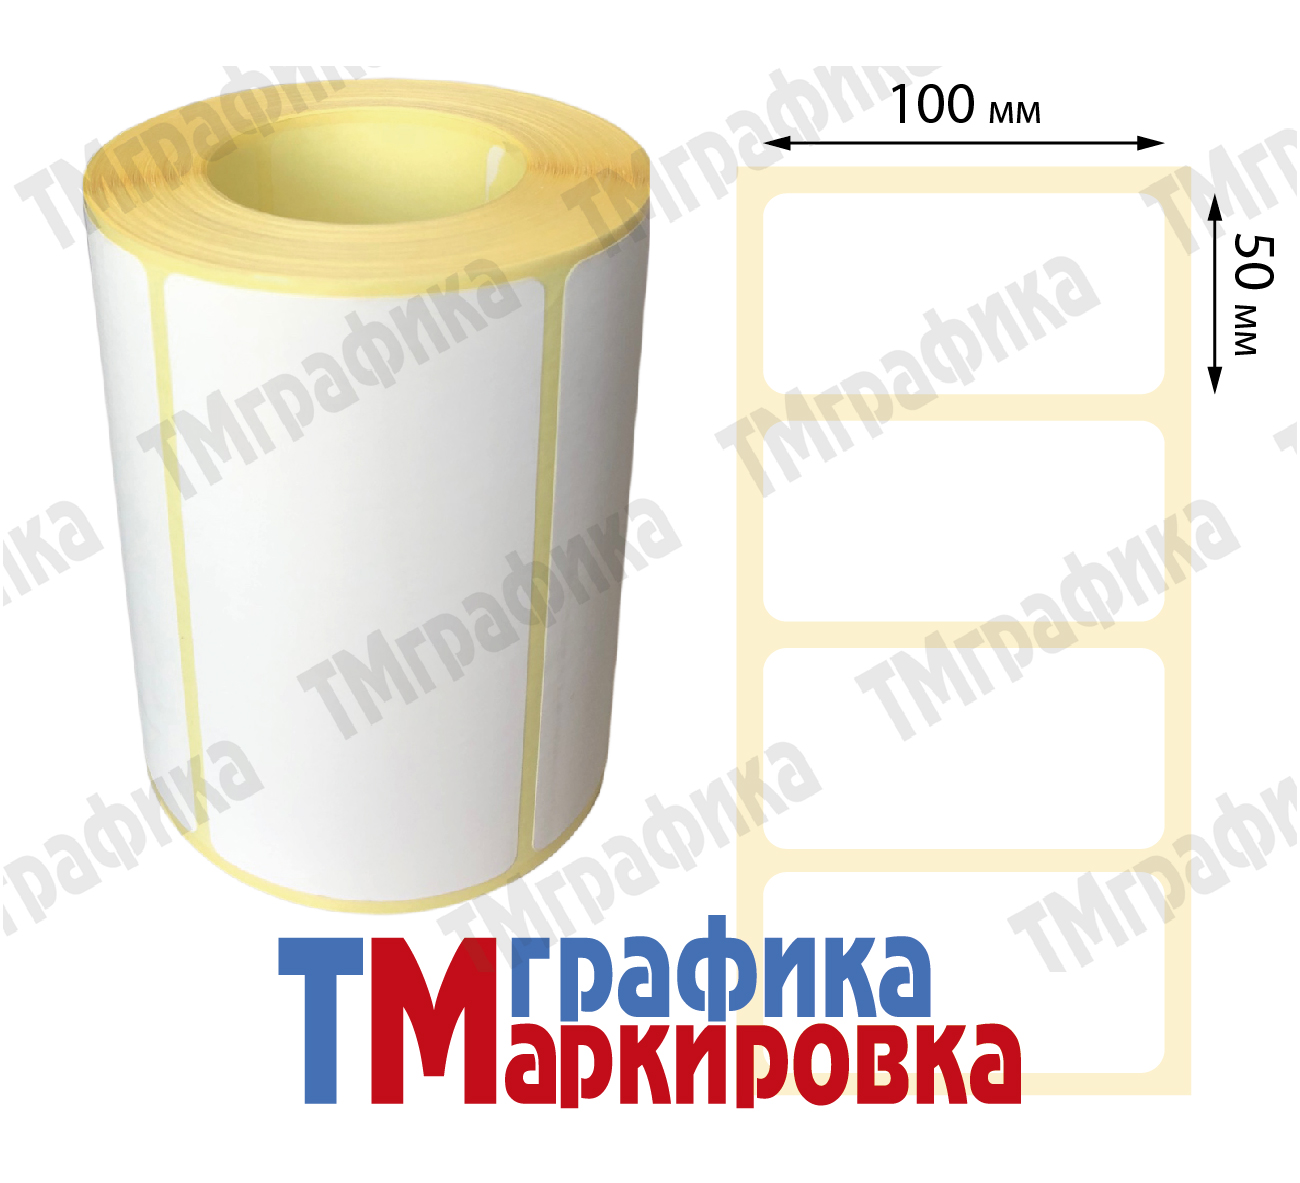 100х50 мм 500 шт. полипропиленовые Термотрансферные этикетки - 662.34 руб.